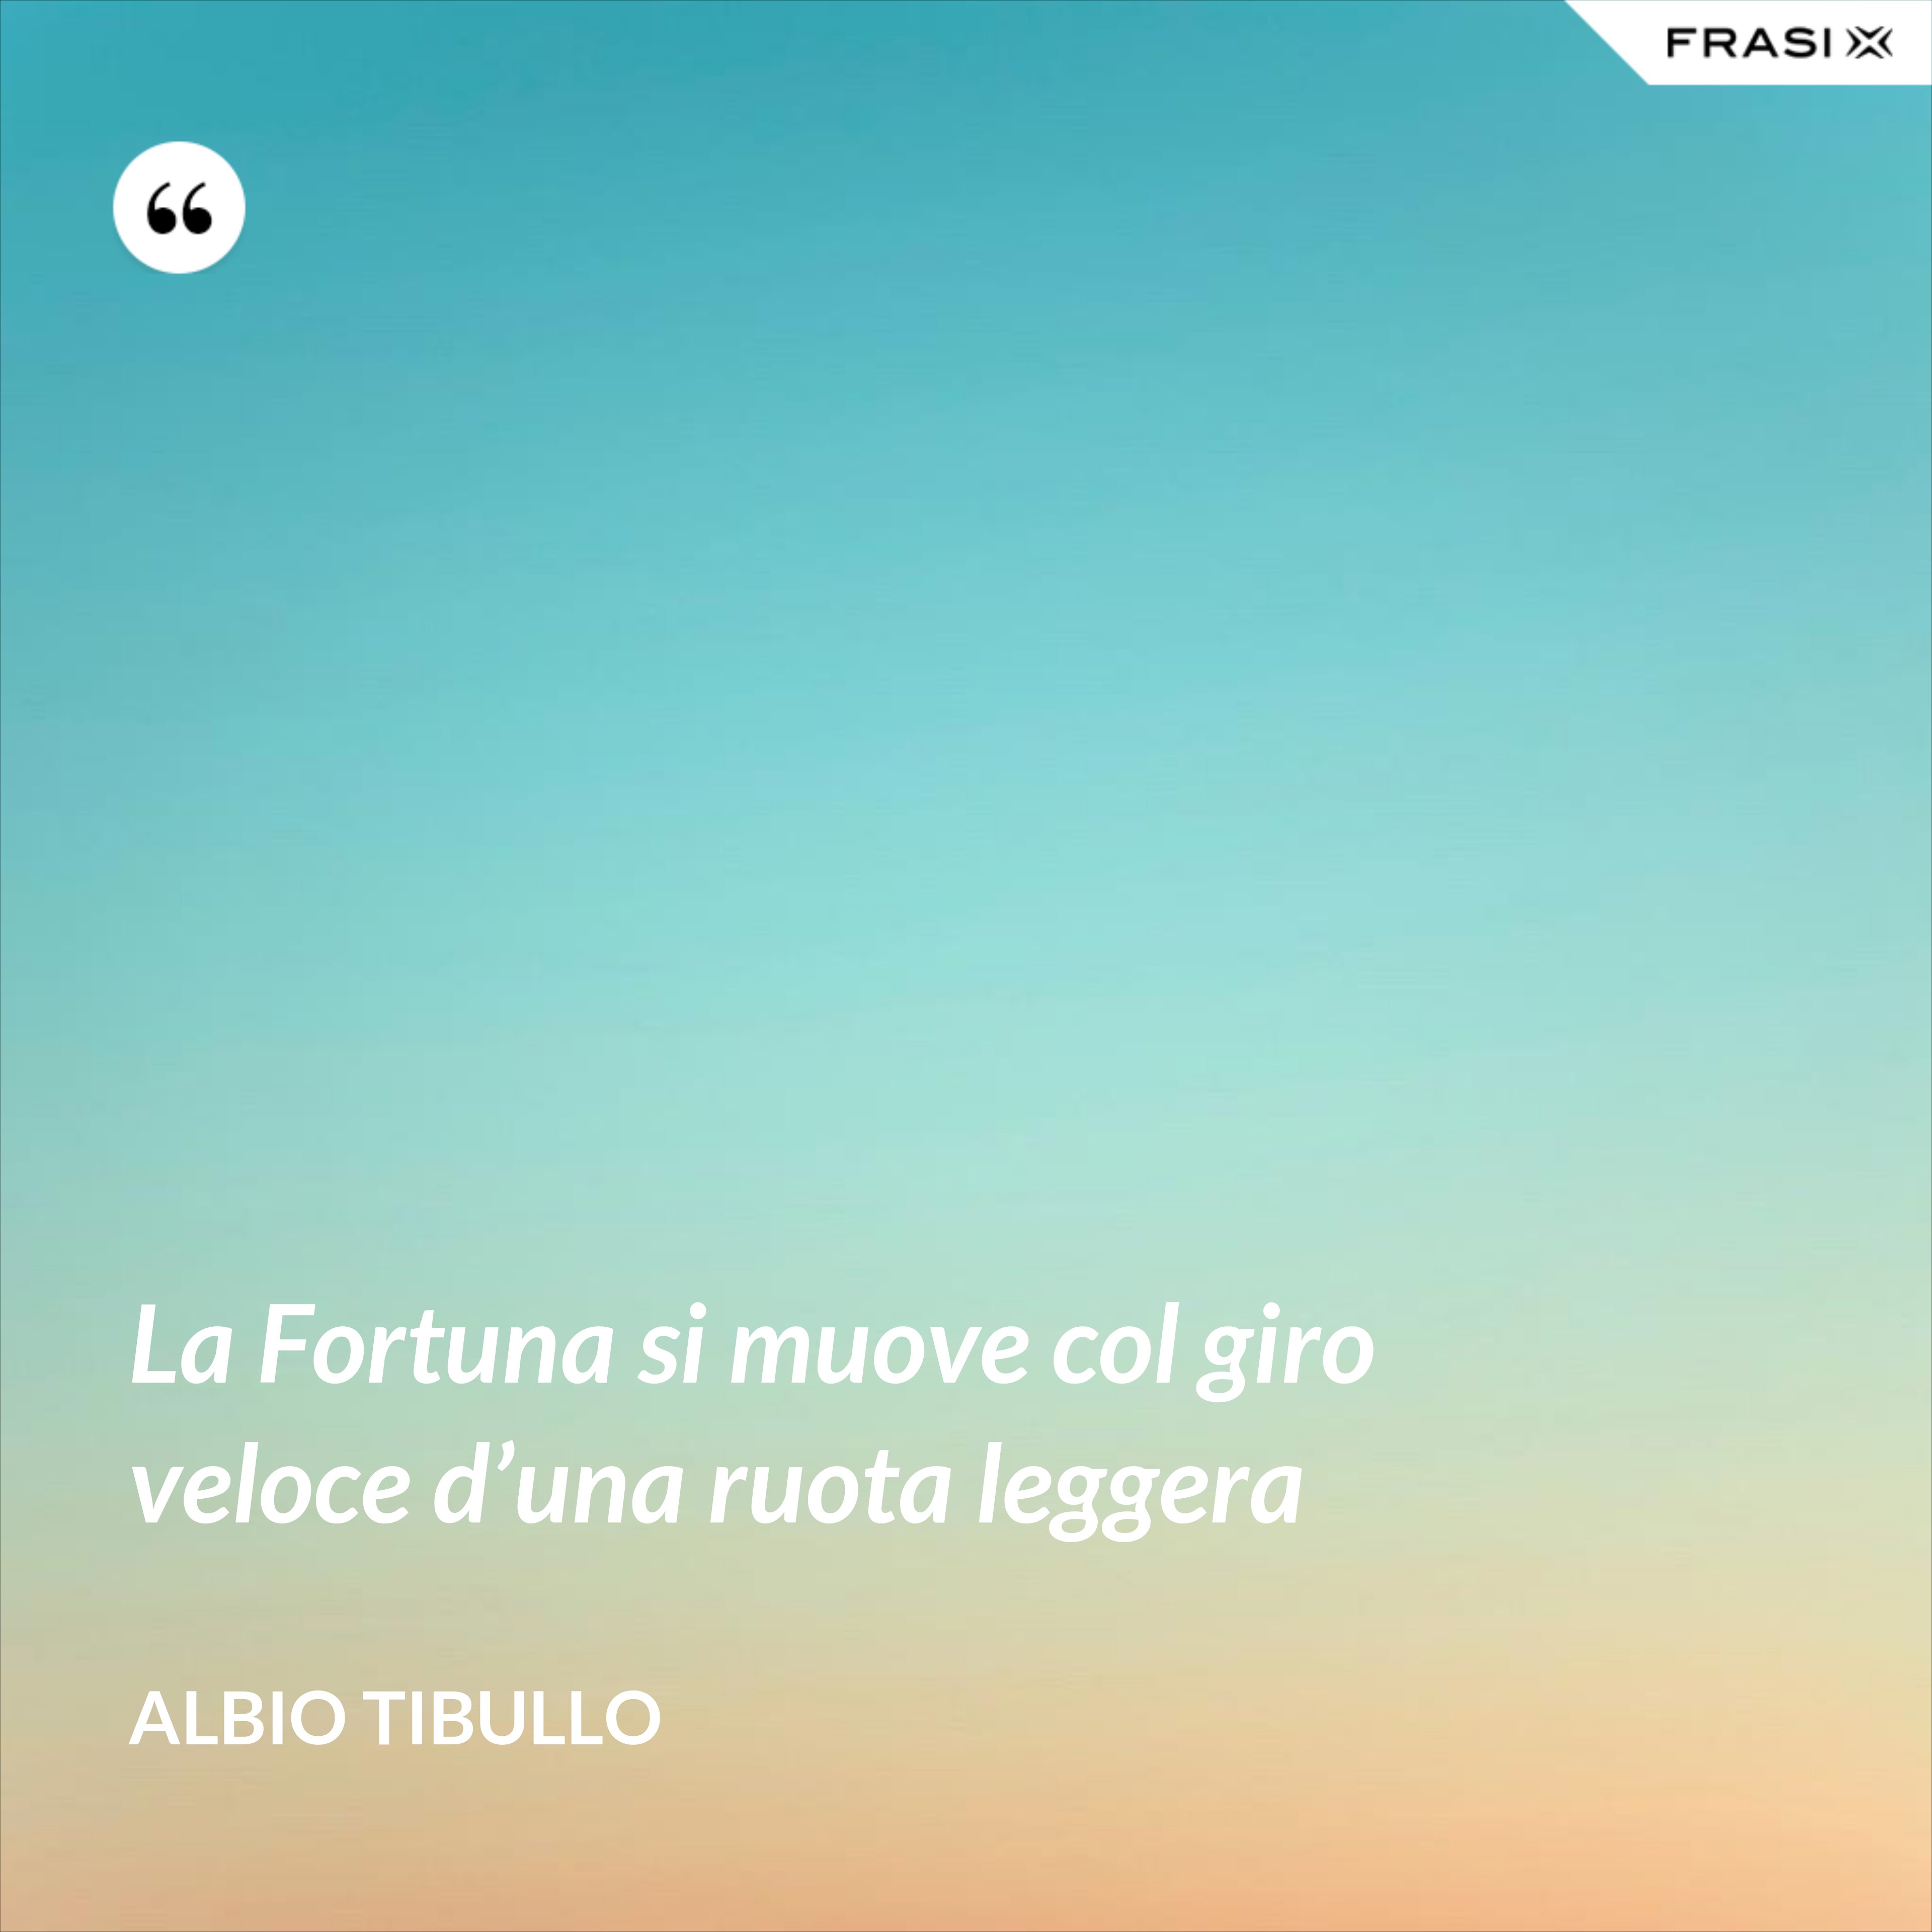 La Fortuna si muove col giro veloce d’una ruota leggera - Albio Tibullo